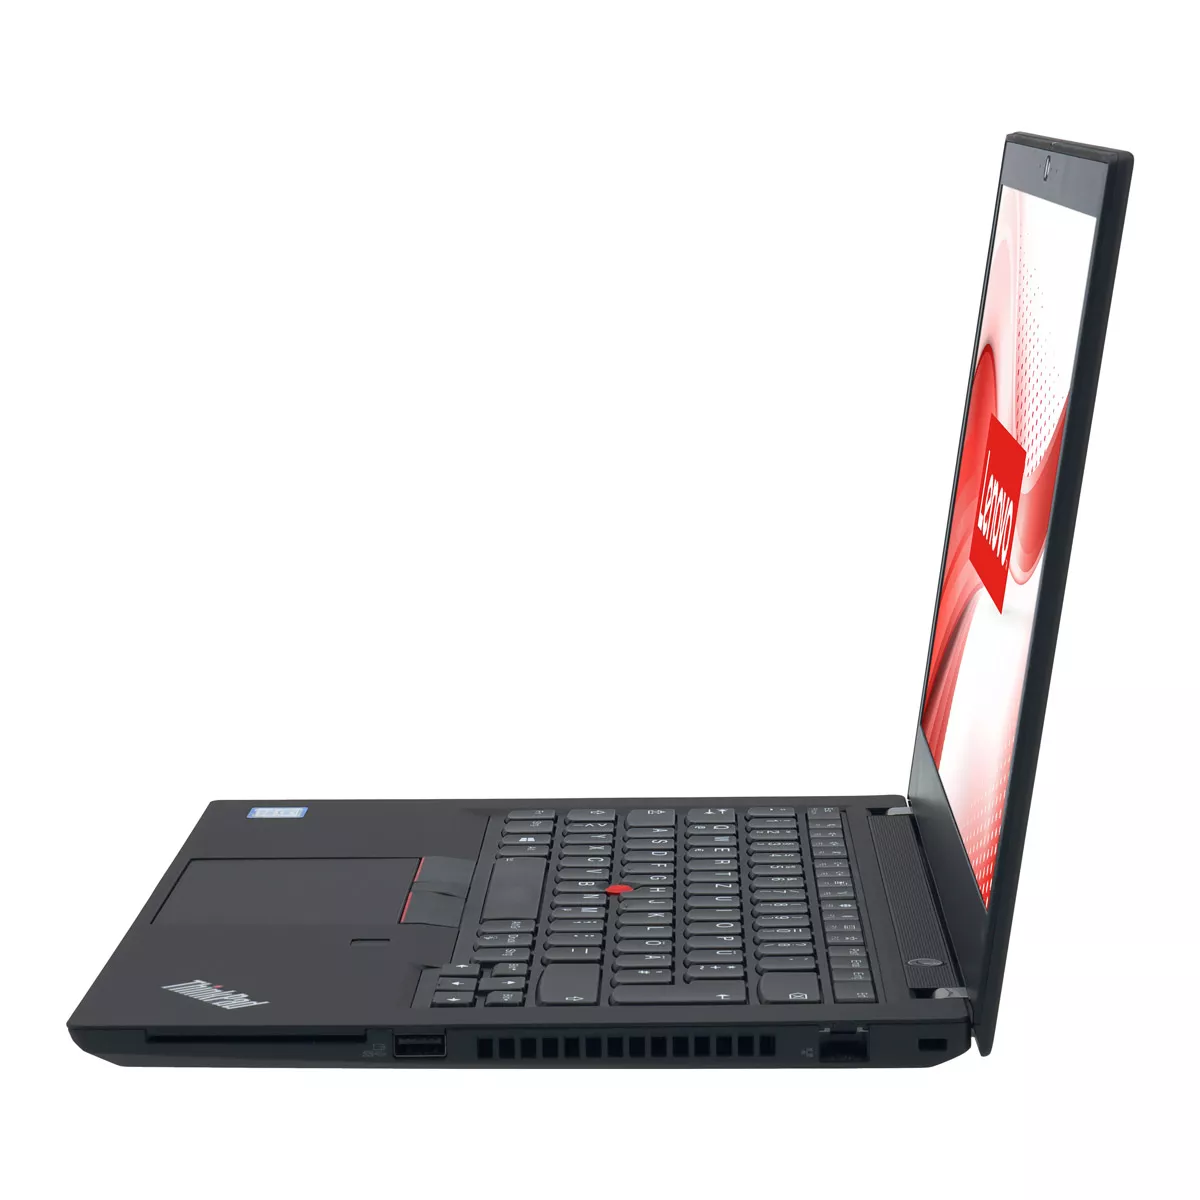 Lenovo ThinkPad T490 Core i5 8365U 16 GB 240 GB M.2 nVME SSD Webcam B